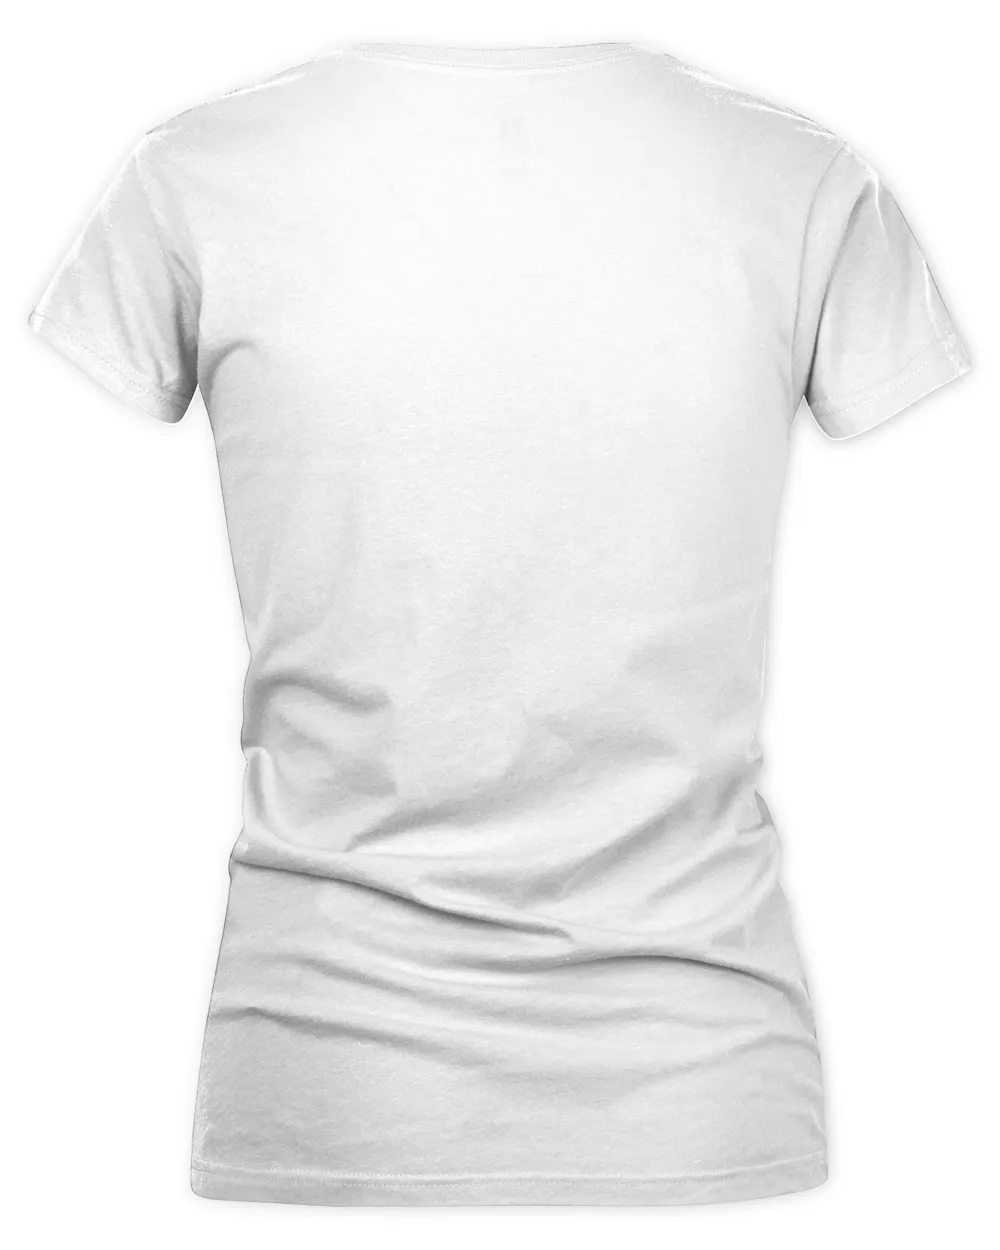 white t shirt